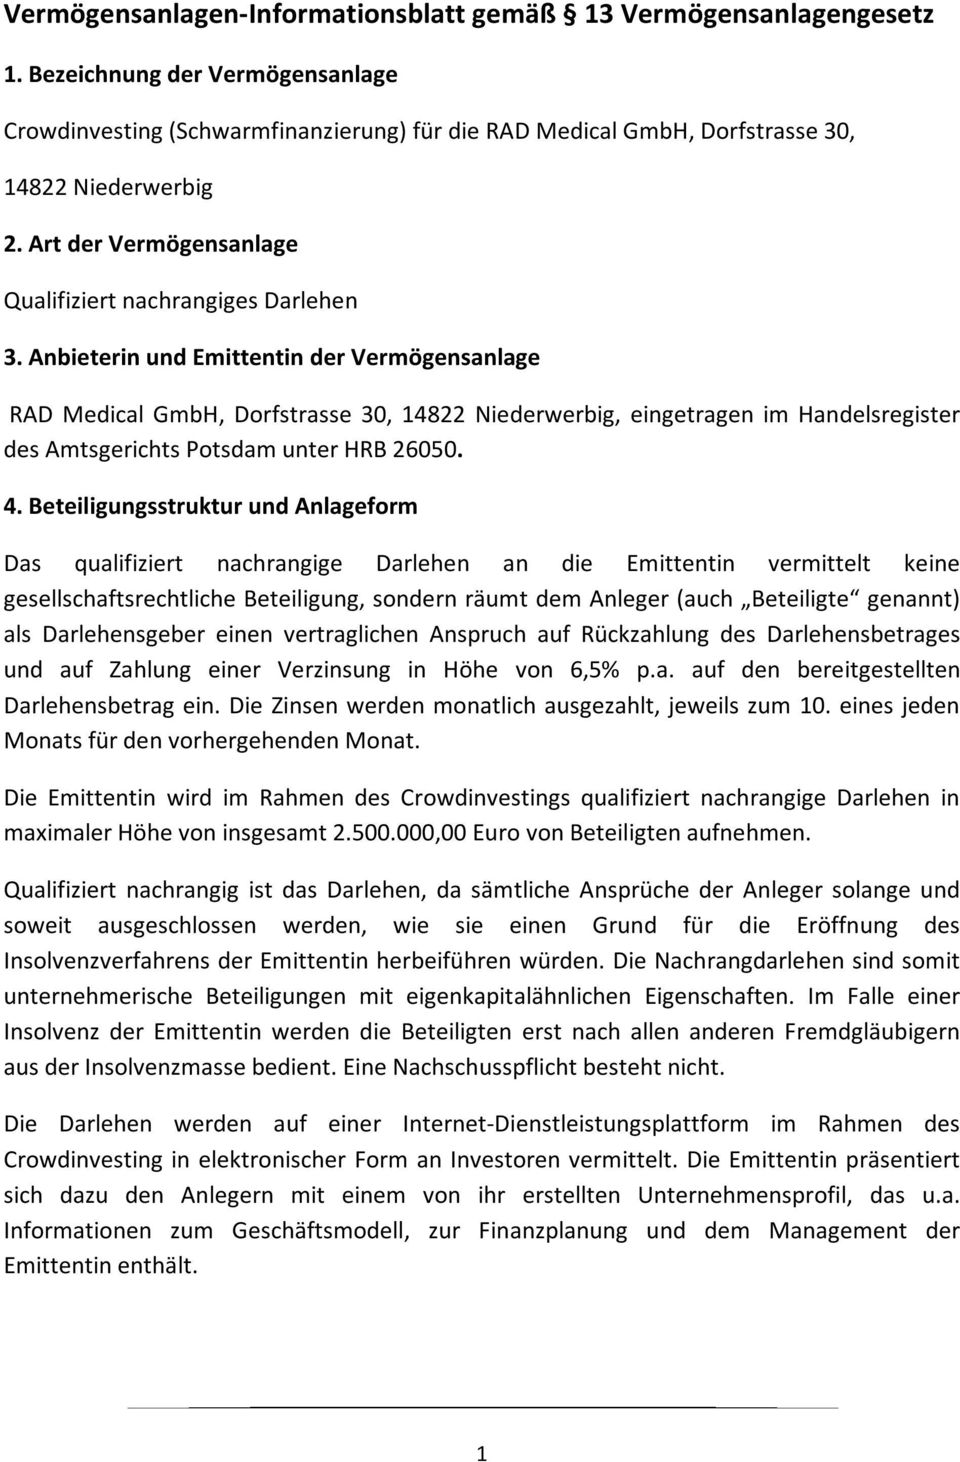 Anbieterin und Emittentin der Vermögensanlage RAD Medical GmbH, Dorfstrasse 30, 14822 Niederwerbig, eingetragen im Handelsregister des Amtsgerichts Potsdam unter HRB 26050. 4.